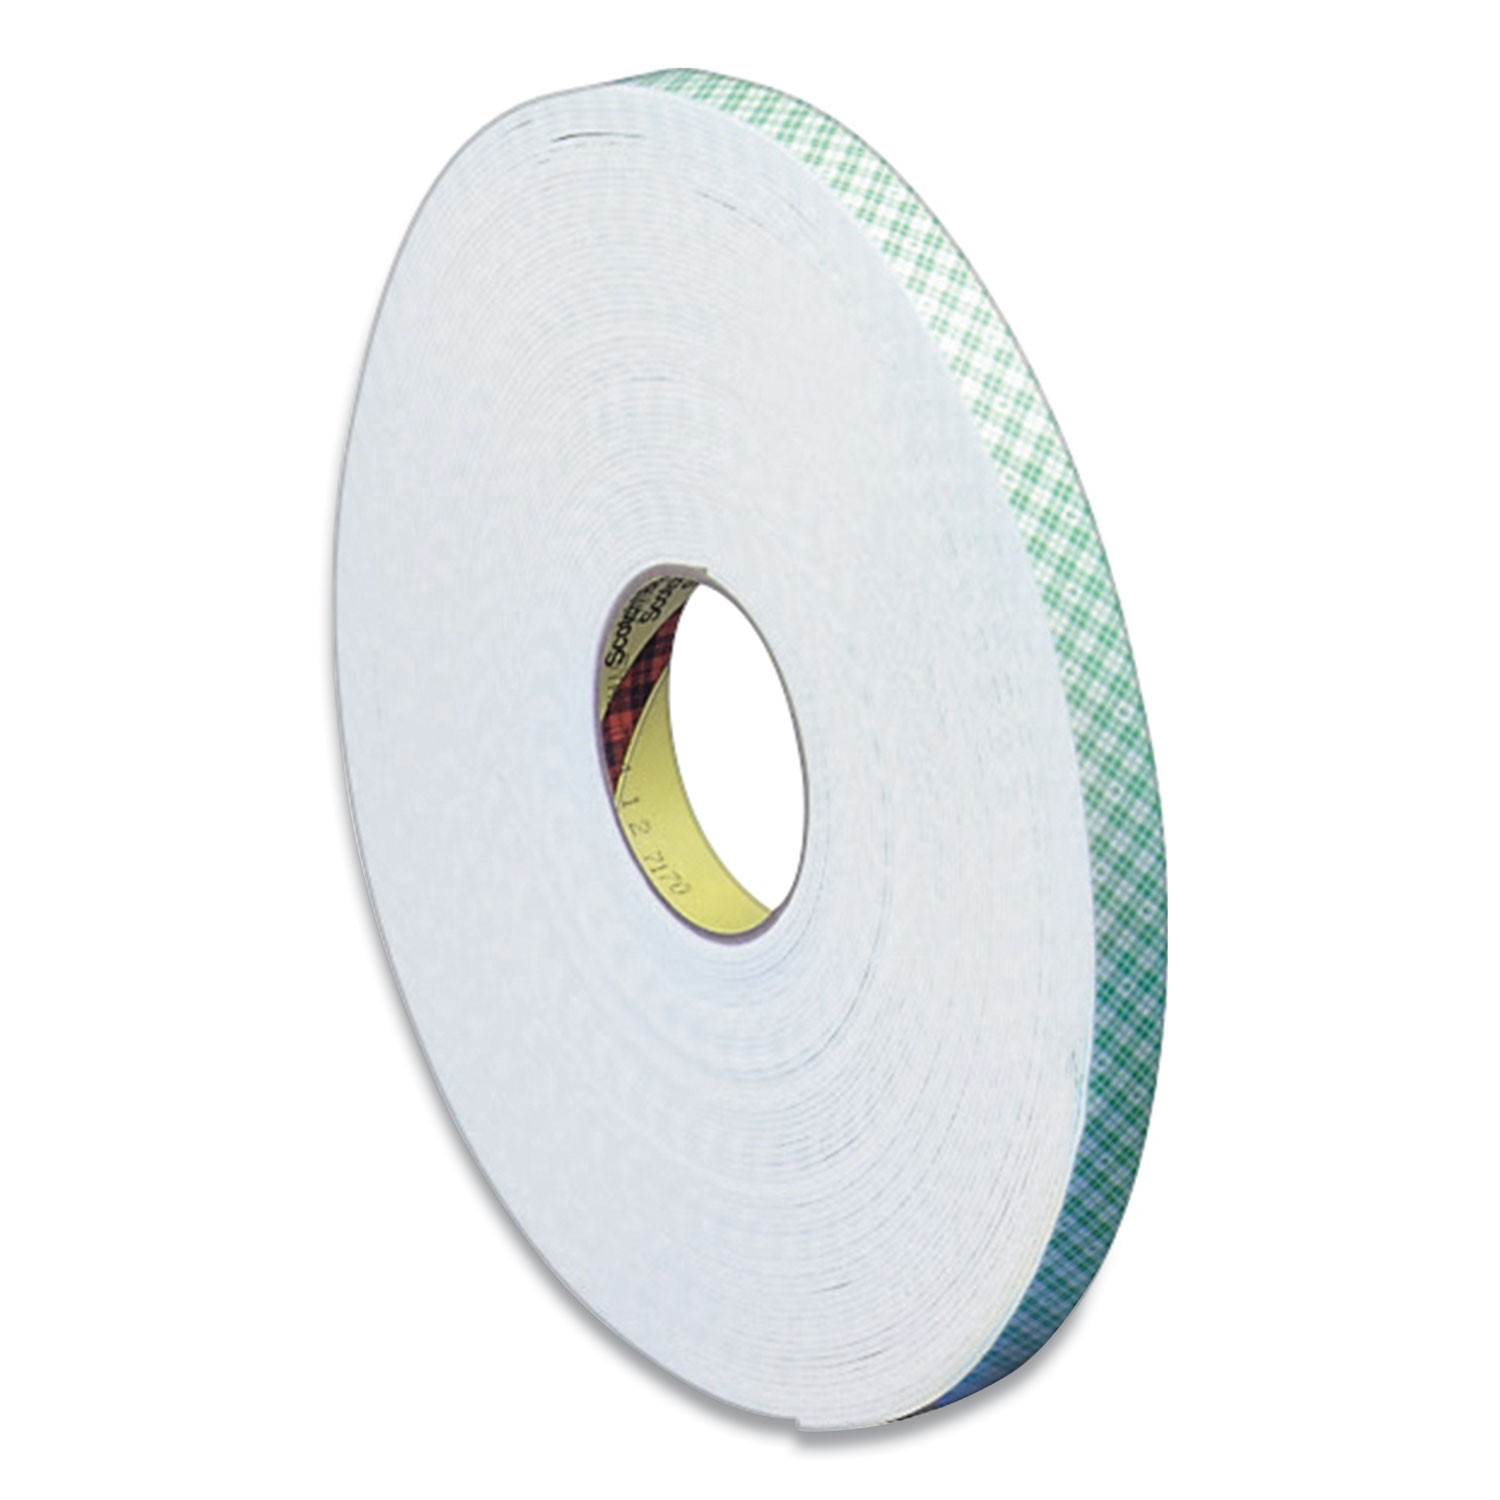  3M 4016 Double Coated Urethane Foam Tape, 0.38 x 36 yds, White (MMM517900) 